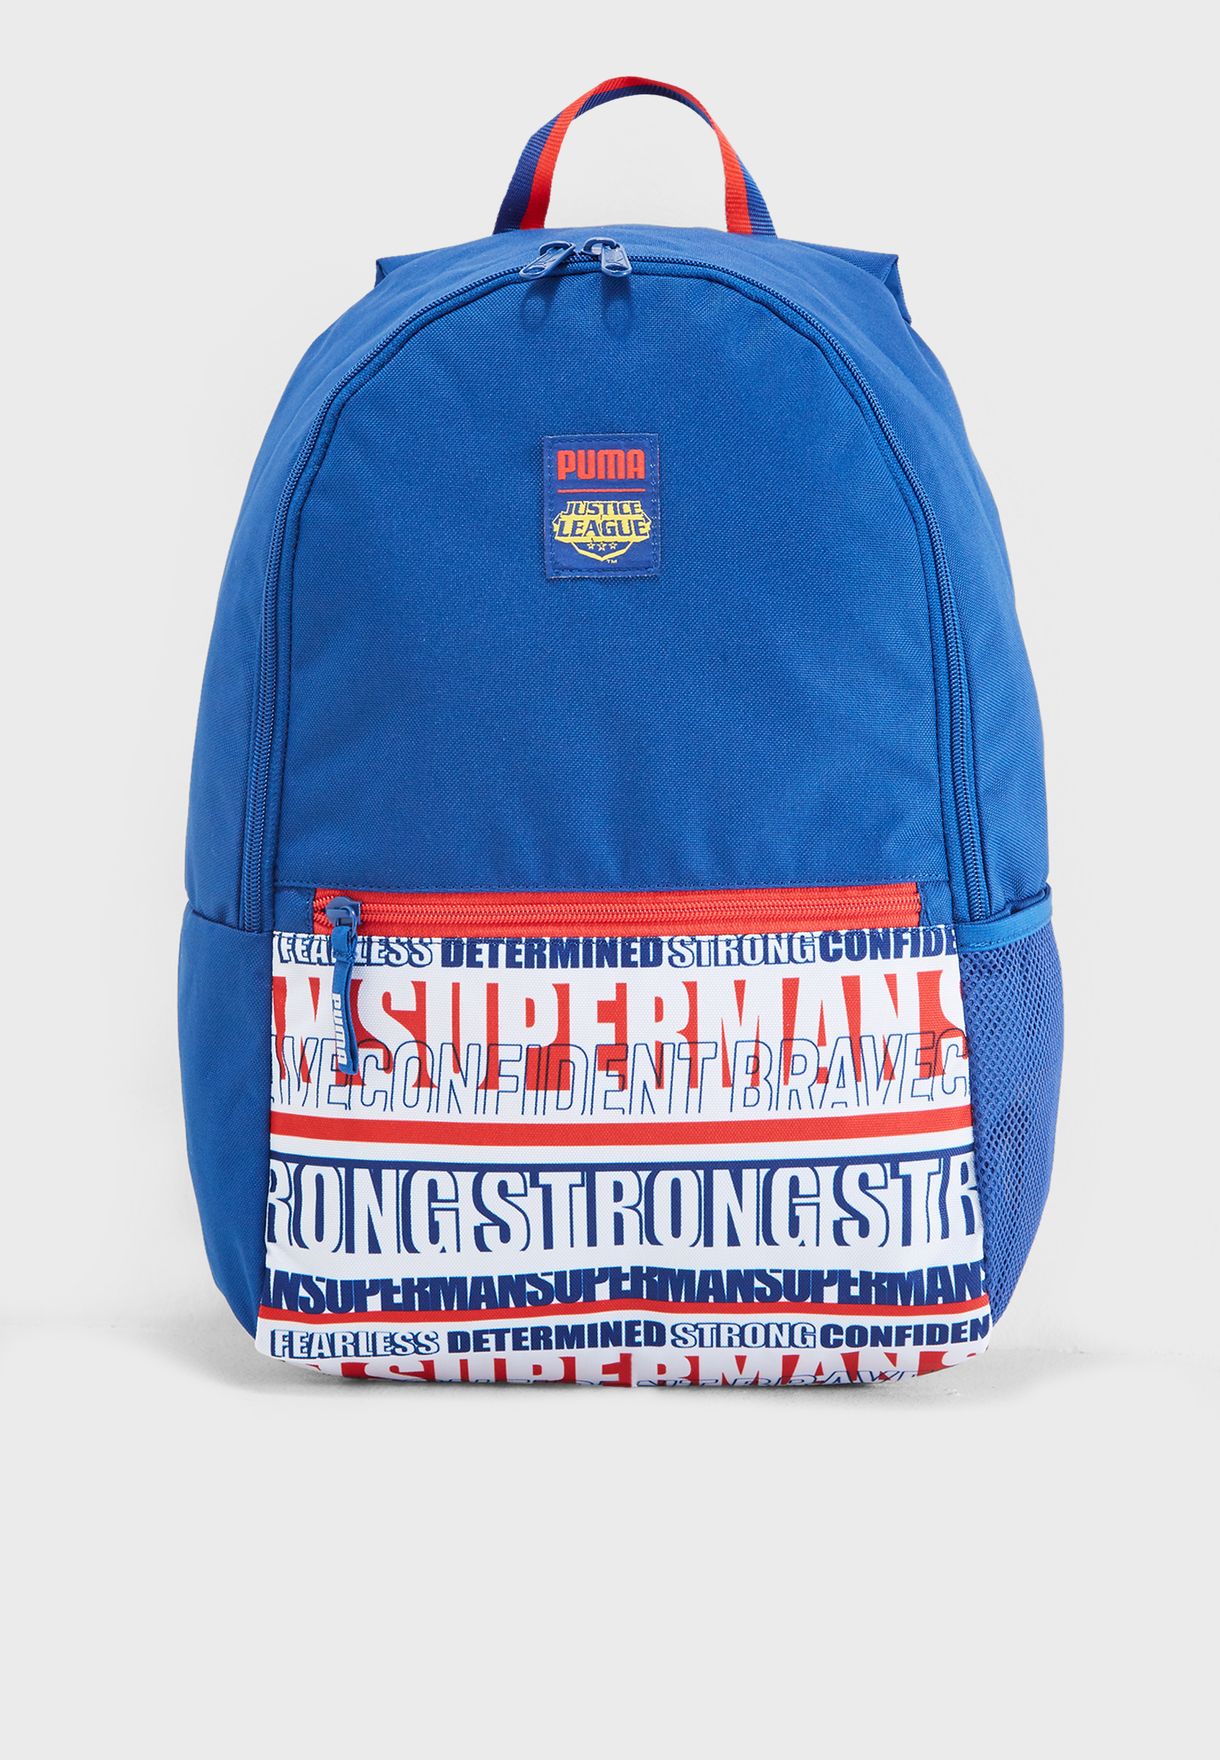 puma superman bag